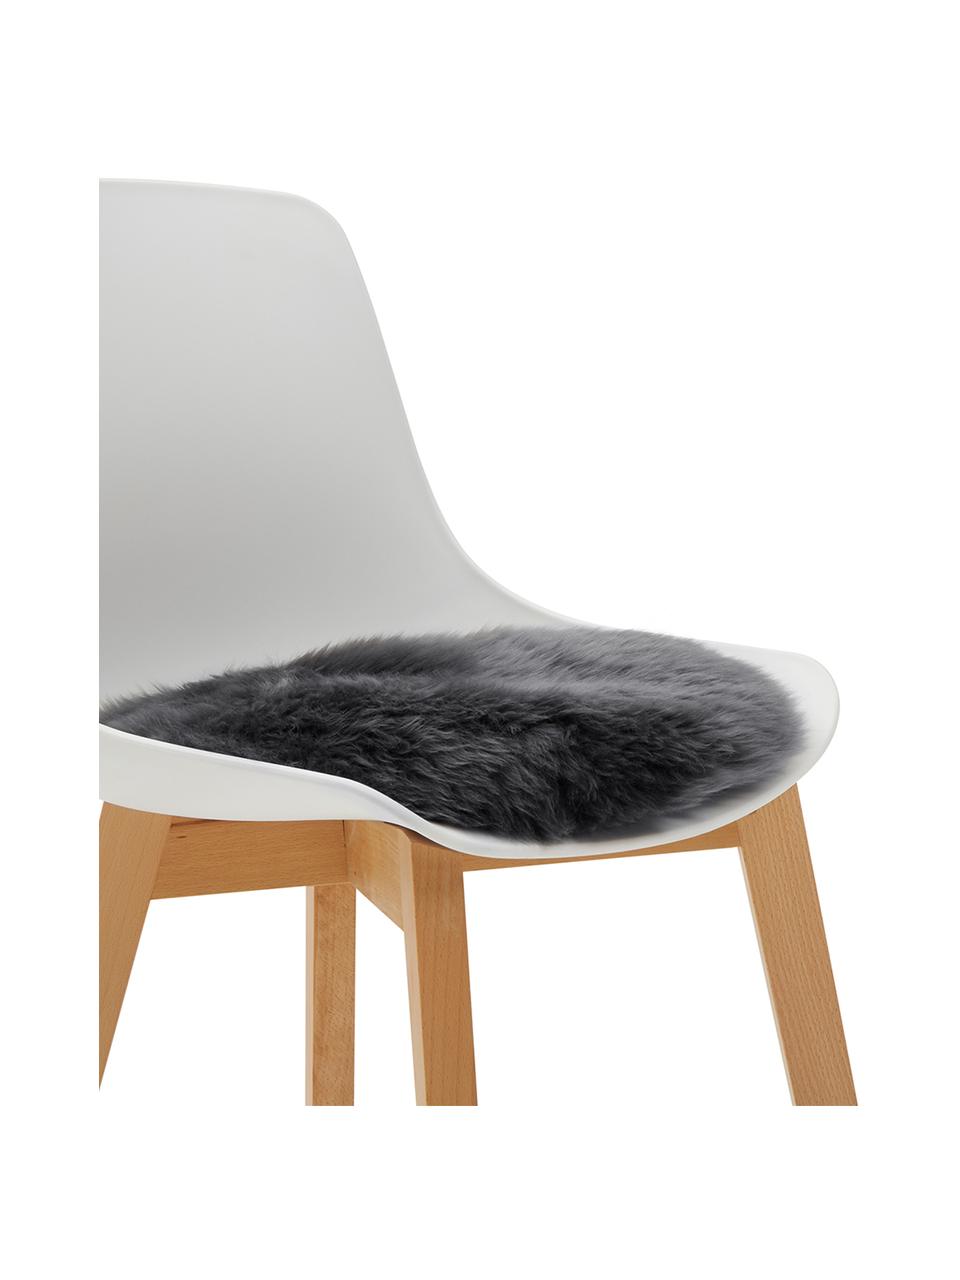 Cuscino sedia rotondo in pelle di pecora liscia Oslo, Retro: 100% pelle rivestita senz, Grigio scuro, Ø 37 cm